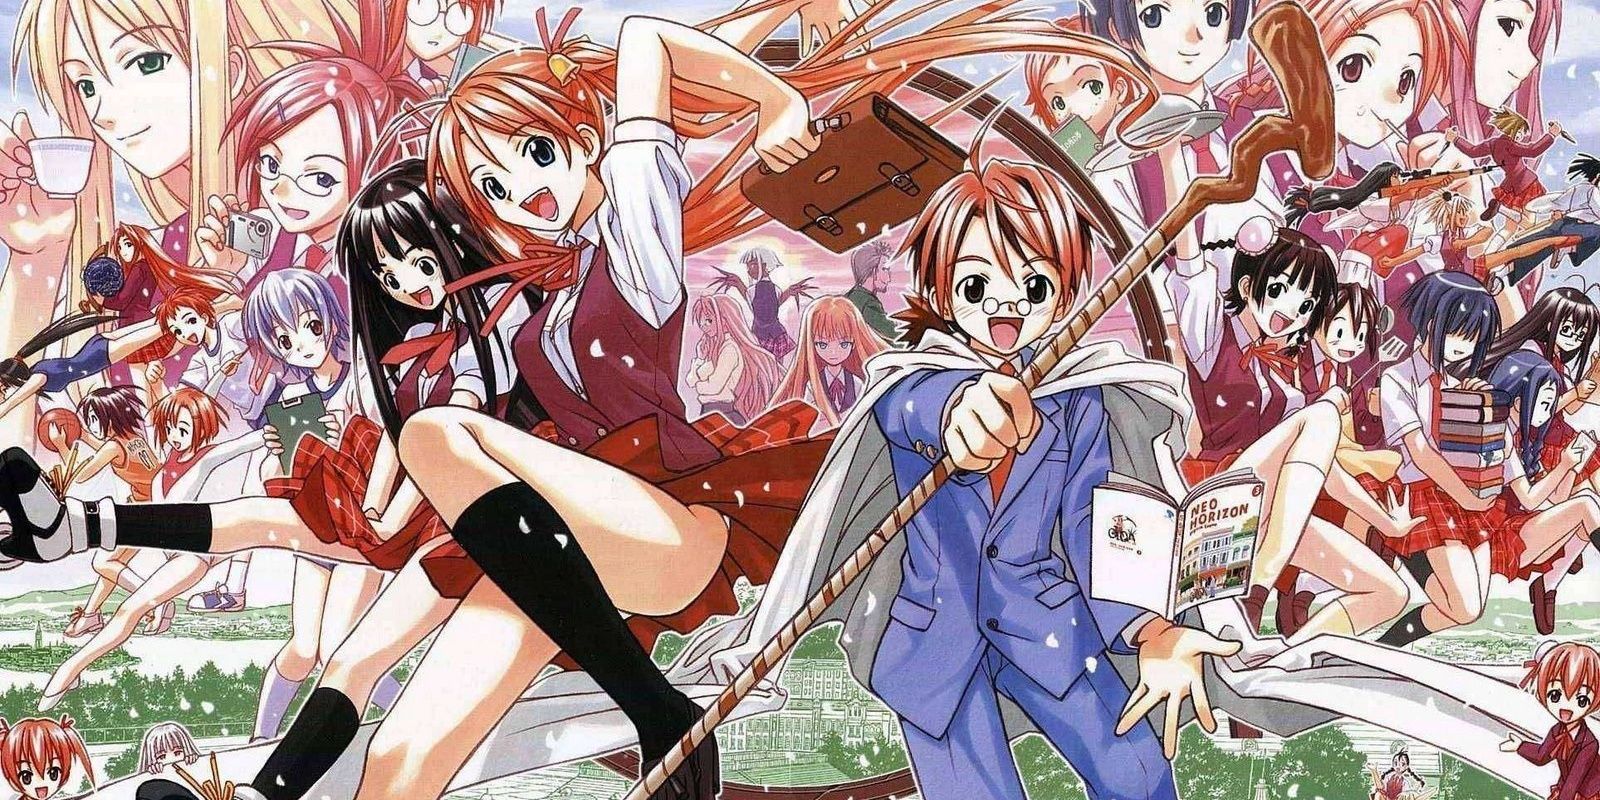 The magical students and teachers of the Mahou Sensei Negima! manga.